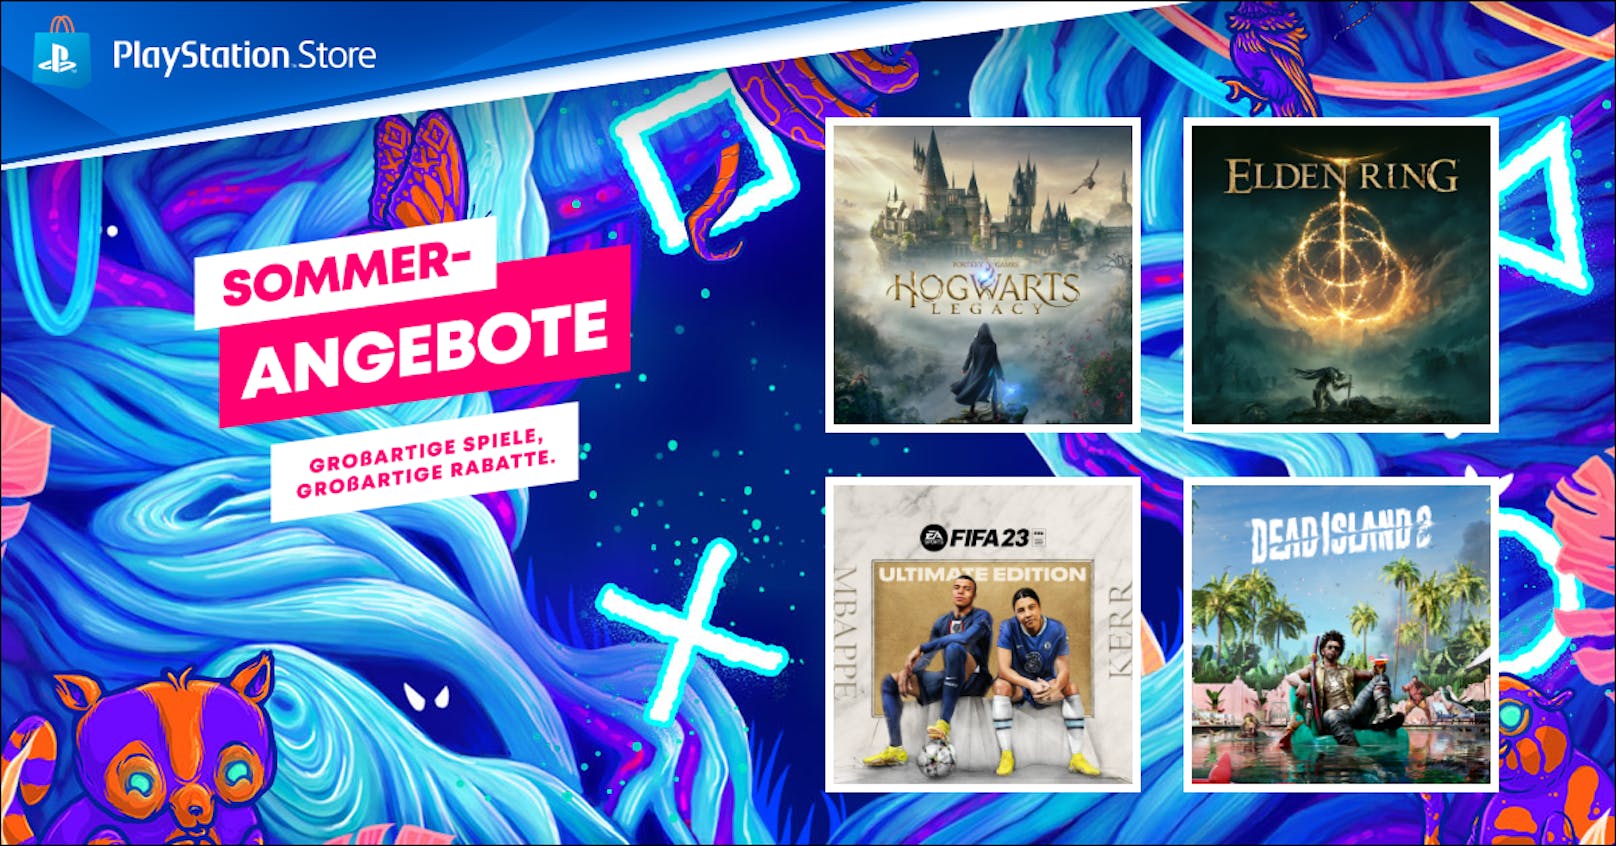 Sommer-Angebote ab sofort im PlayStation Store verfügbar.